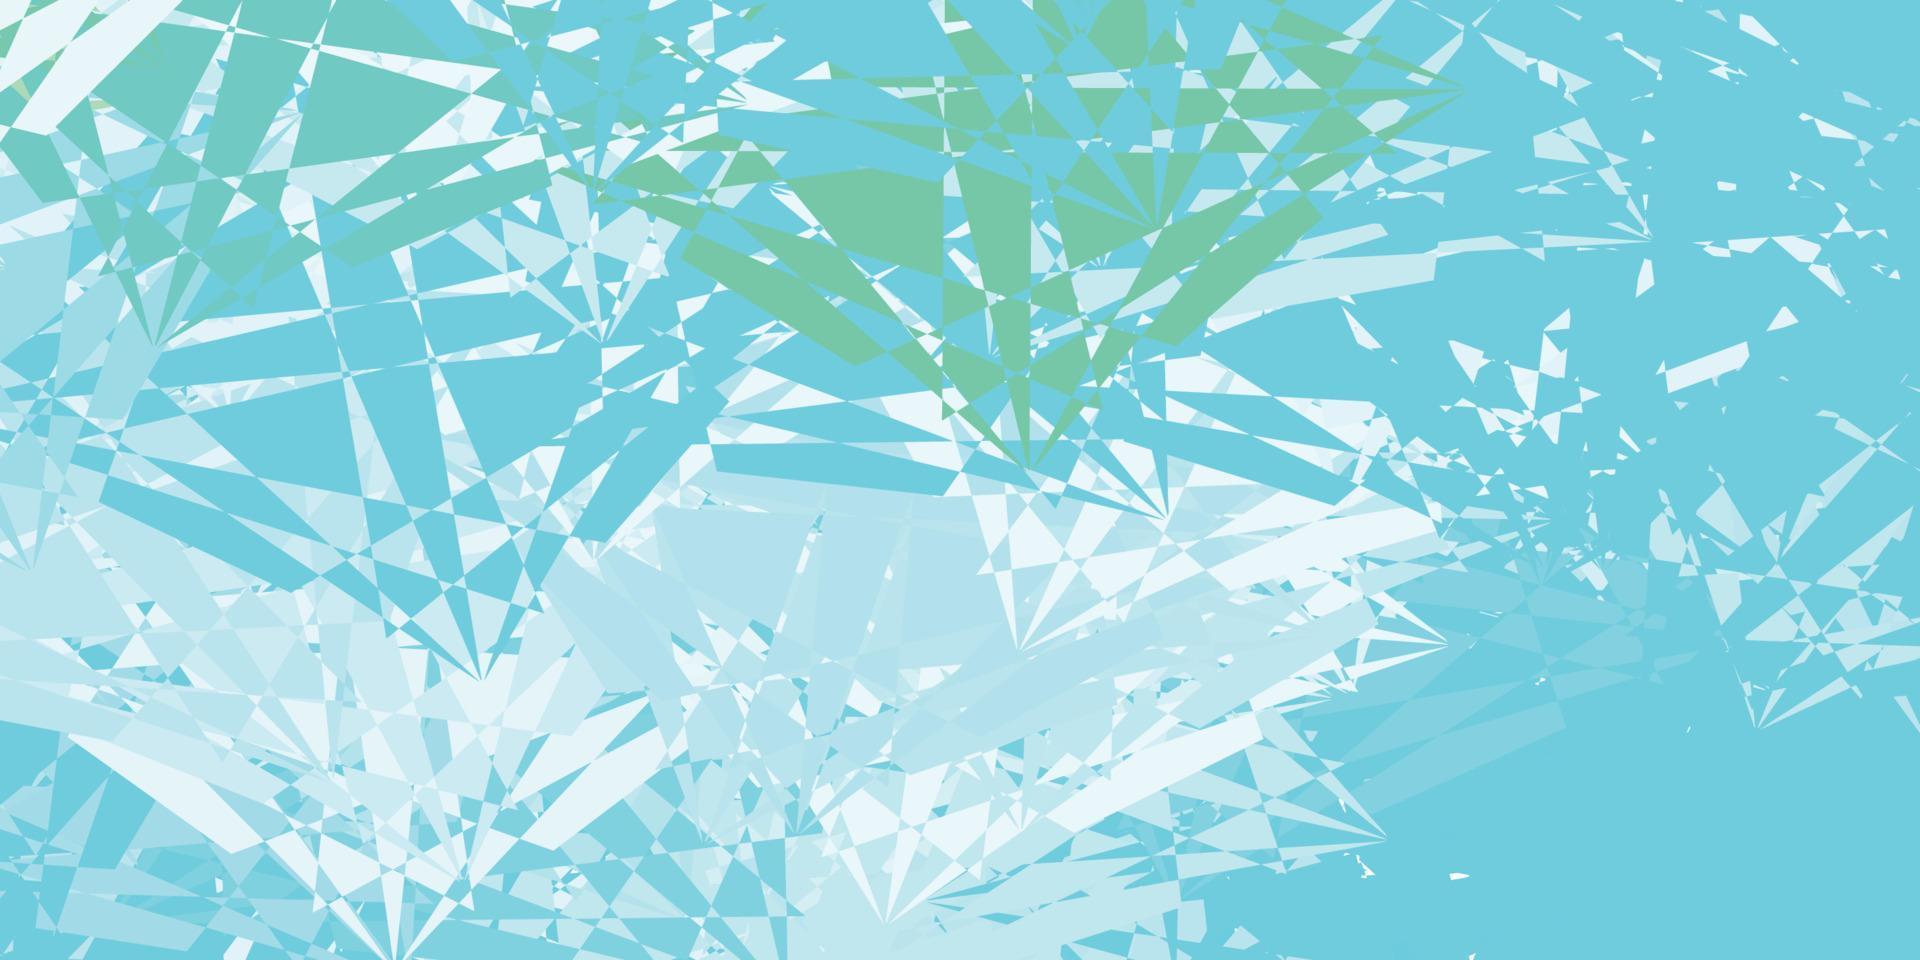 textura de vector azul claro, verde con formas de memphis.